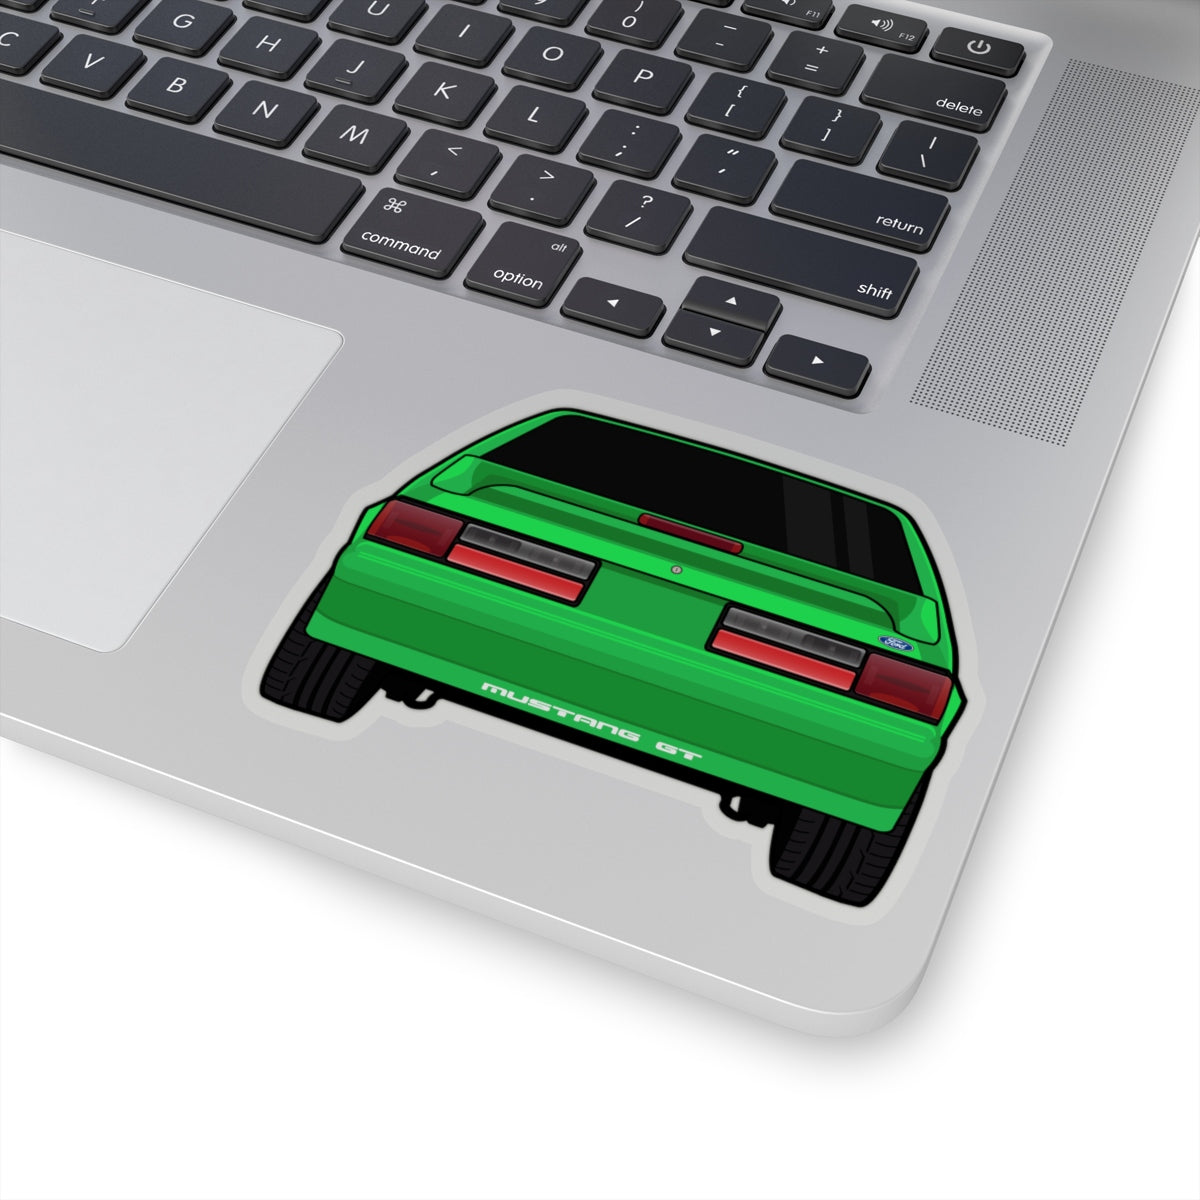 87-93 Green Hatchback Sticker (Rear) - 5ohNation